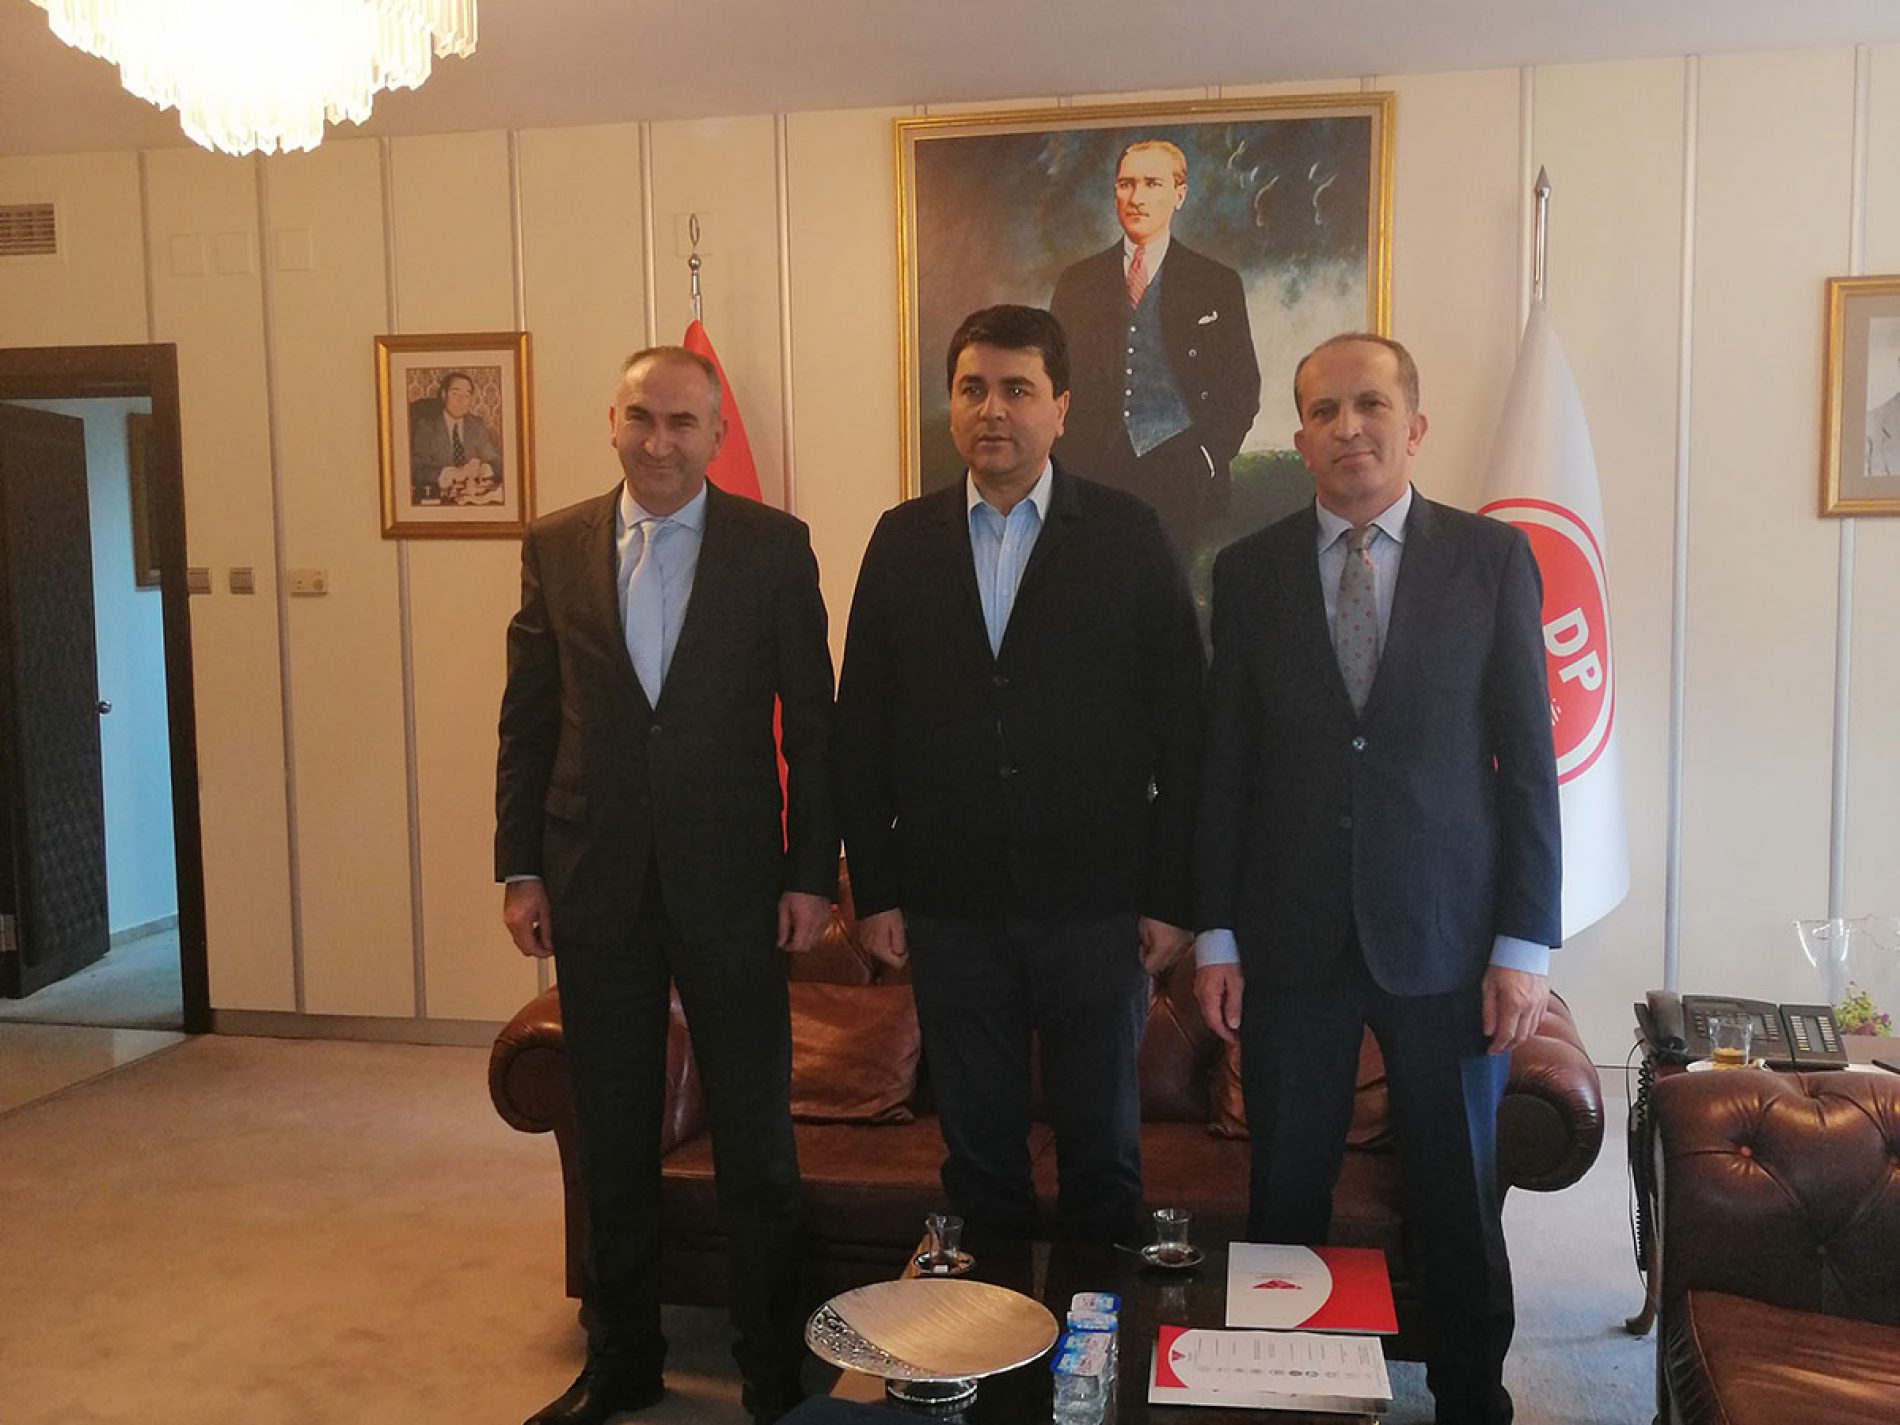 协会会长İhsanBEŞER拜访了民主党主席Gültekin UYSAL